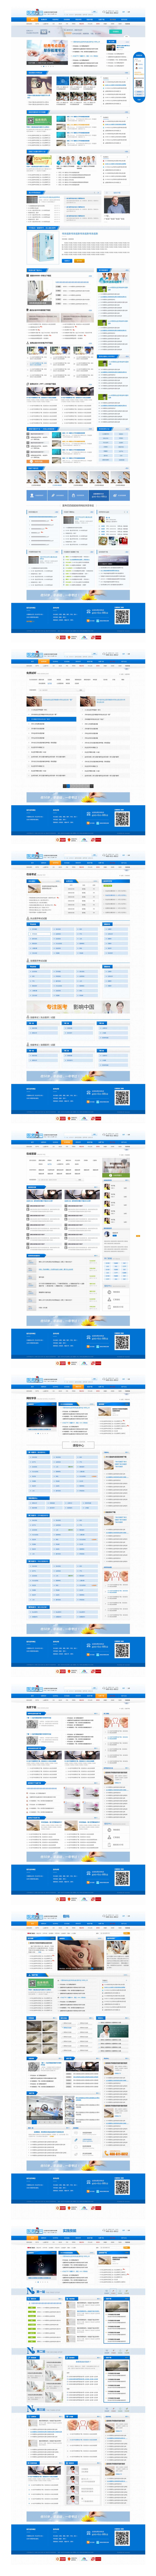 医考巴巴-医学考试网站平台二次改版3.jpg